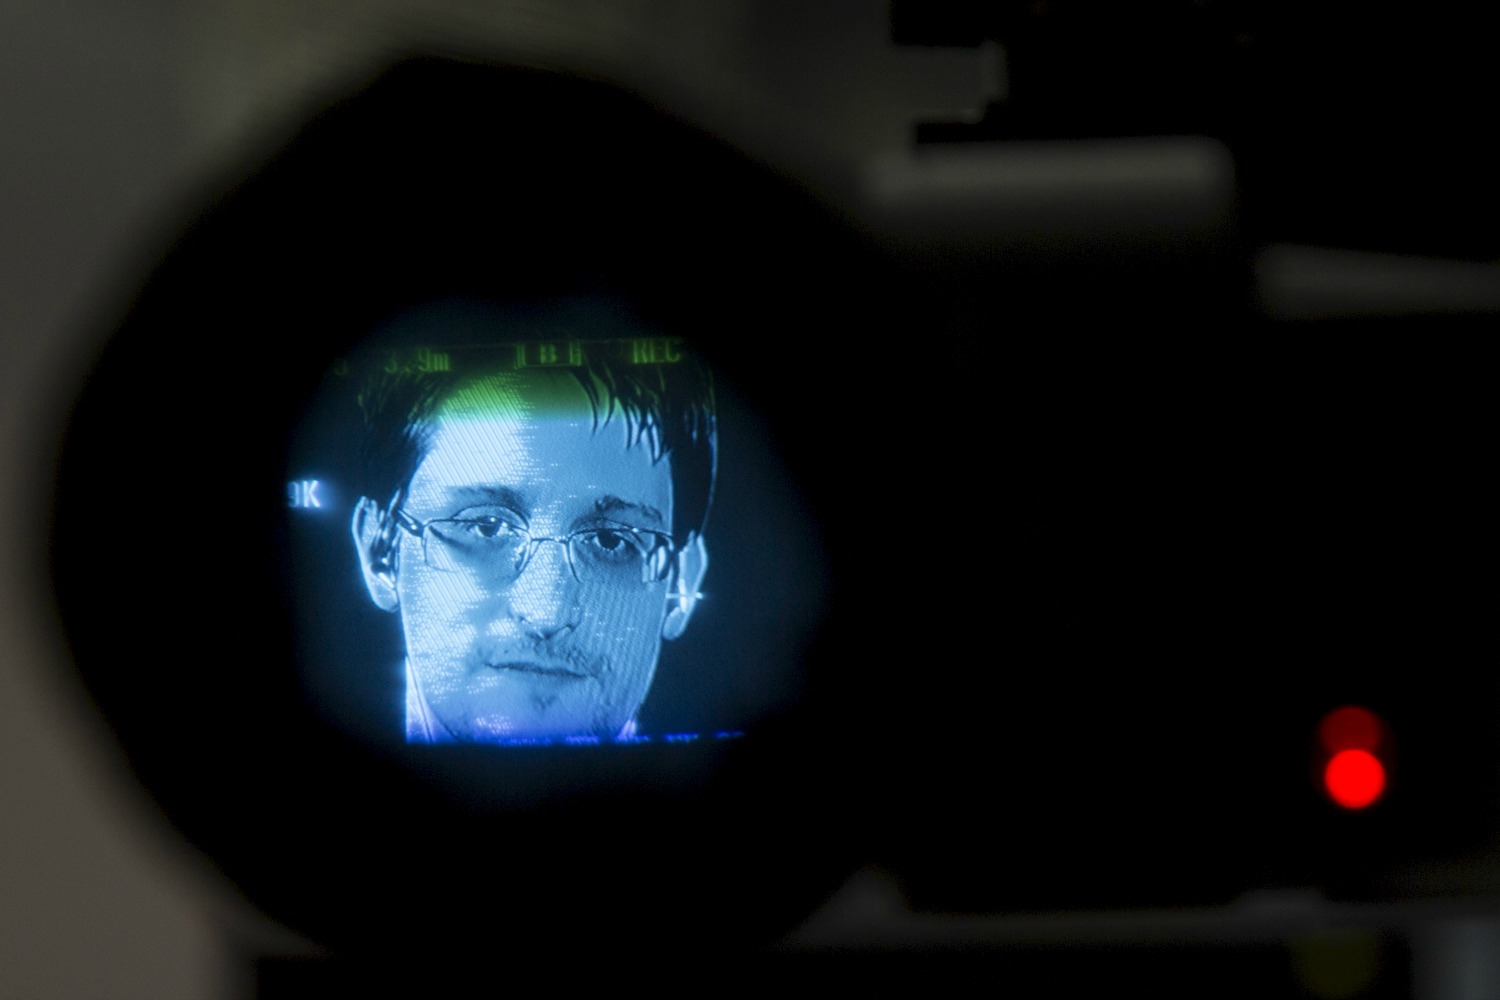 La Eurocámara vota a favor de proteger a Edward Snowden, que reveló el espionaje masivo de EEUU